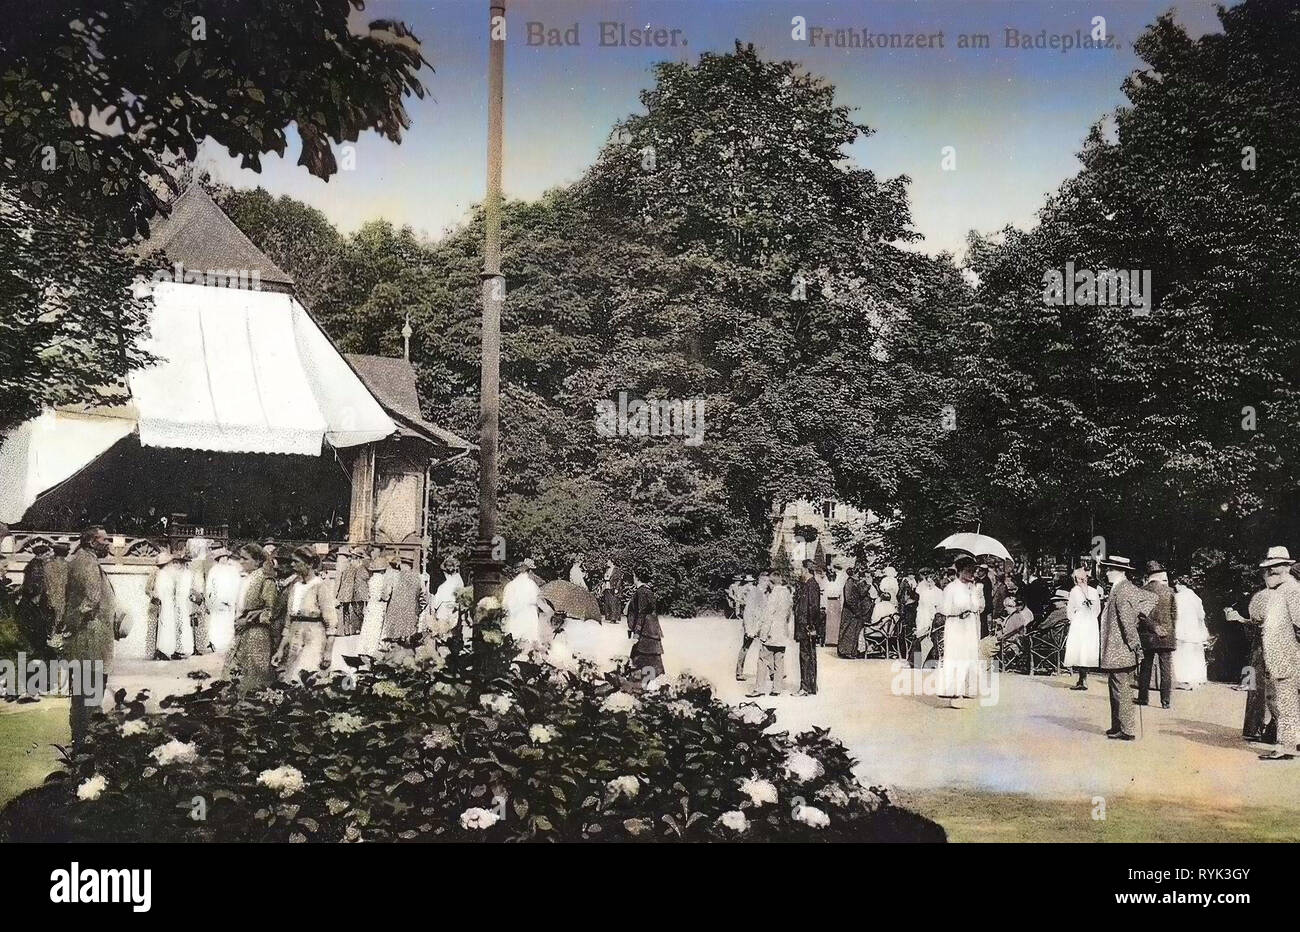 Conciertos en Alemania, Edificios en Bad Elster, 1914, Vogtlandkreis, Bad Elster, mit Frühkonzert Badeplatz Foto de stock